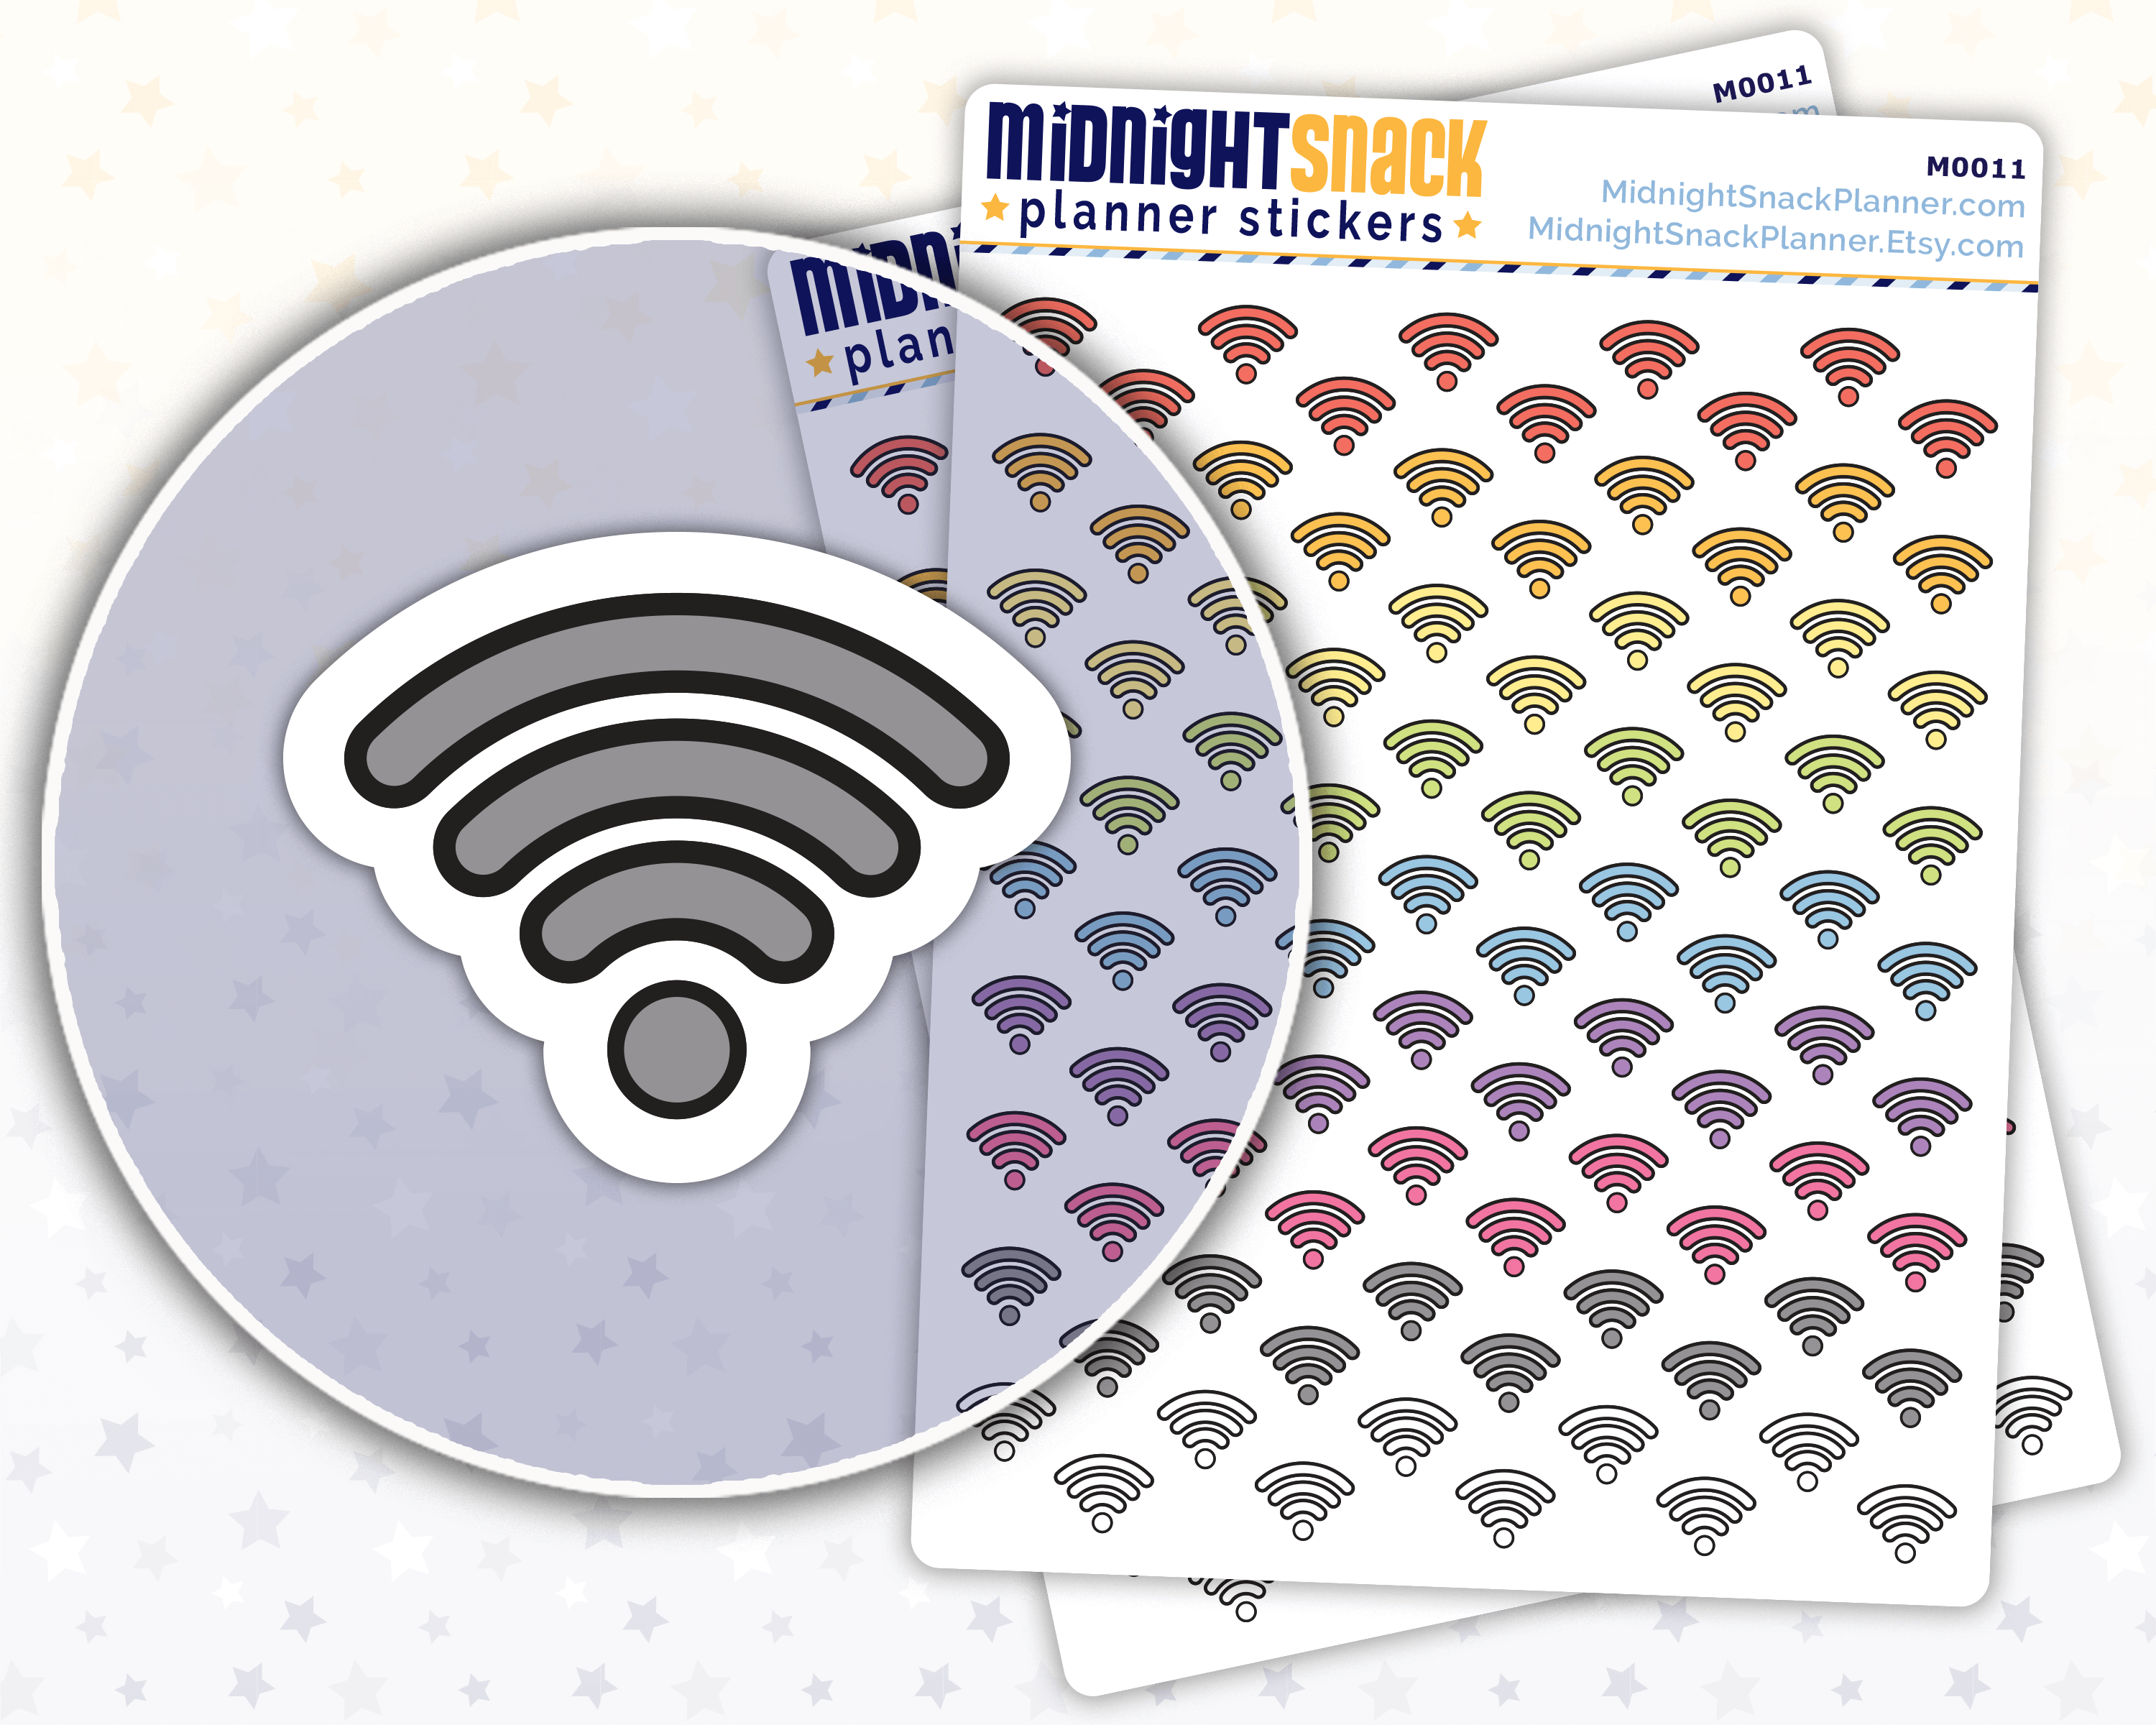 WiFi Icon: Internet Bill Planner Stickers: Midnight Snack Planner